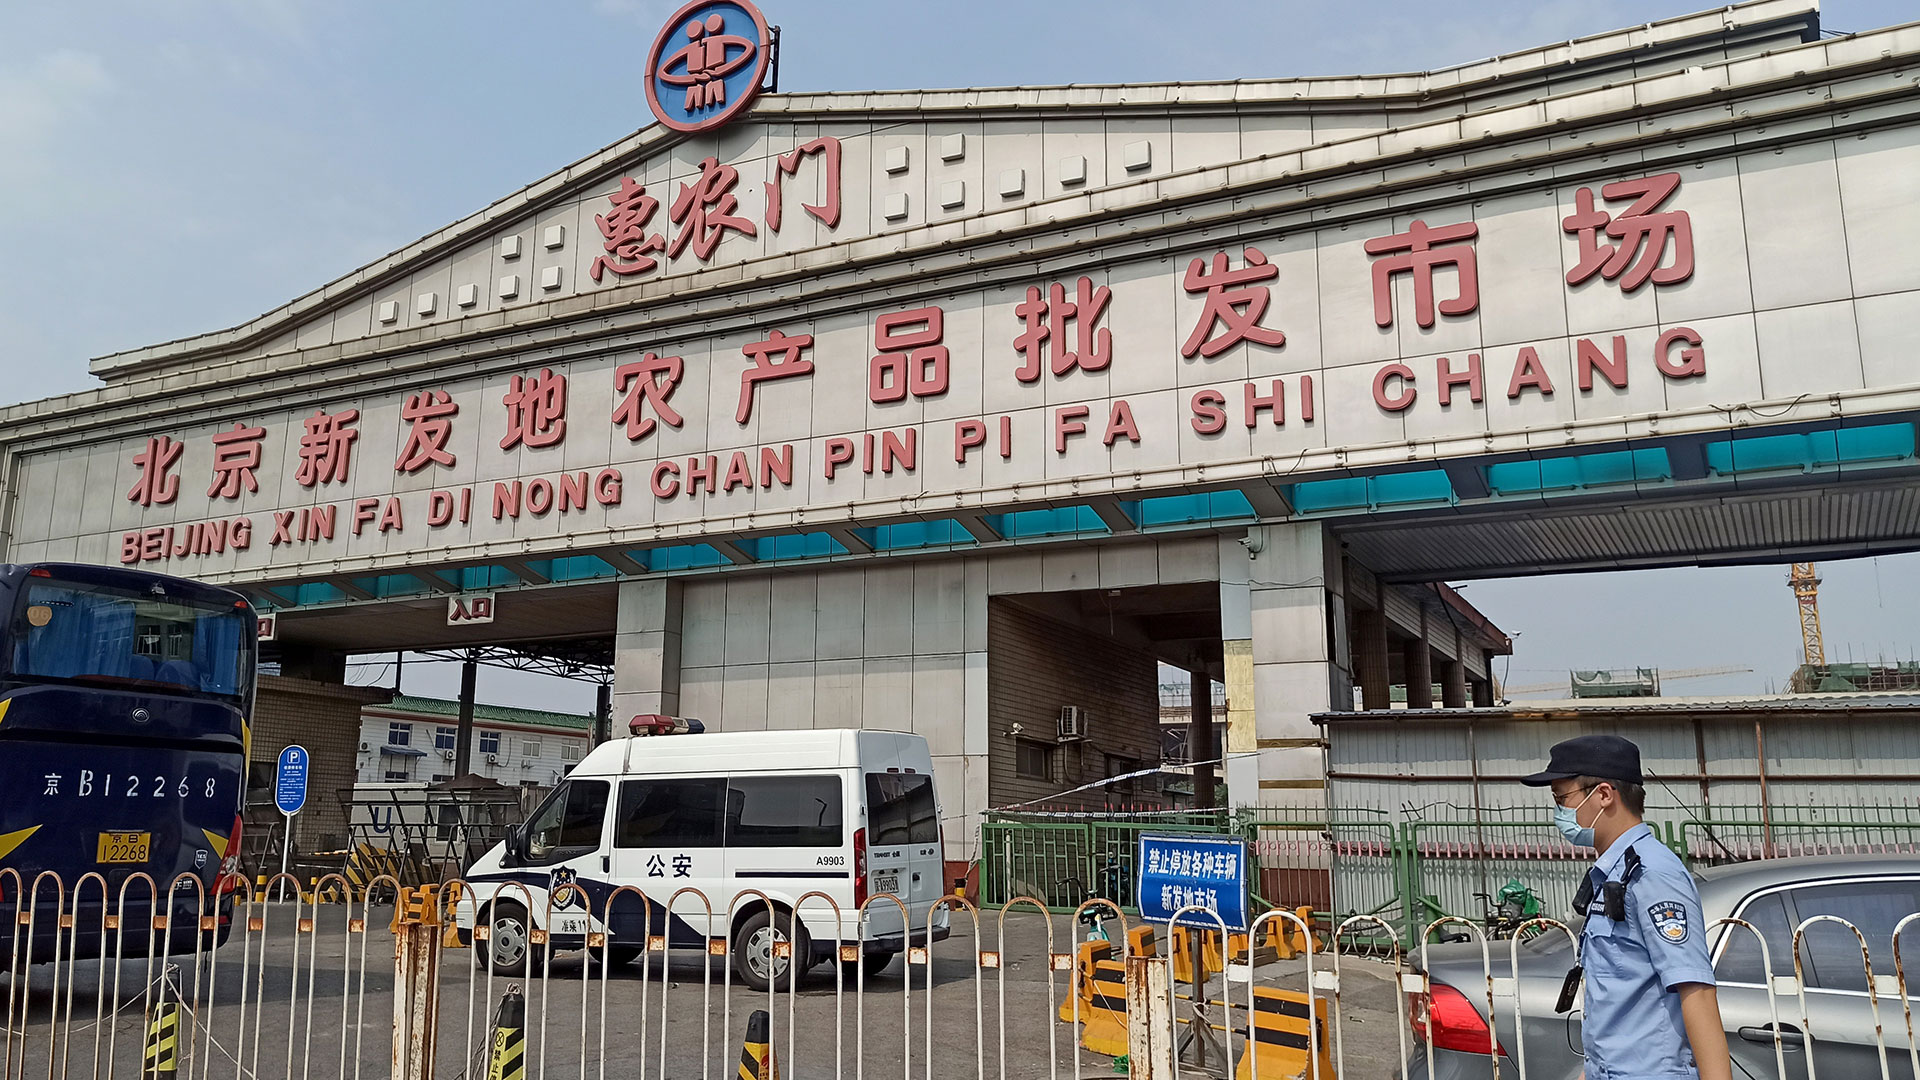 El mercado de Xinfadi tiene más de un millón de metros cuadrados, el equivalente a decenas de terrenos de fútbol (Reuters)